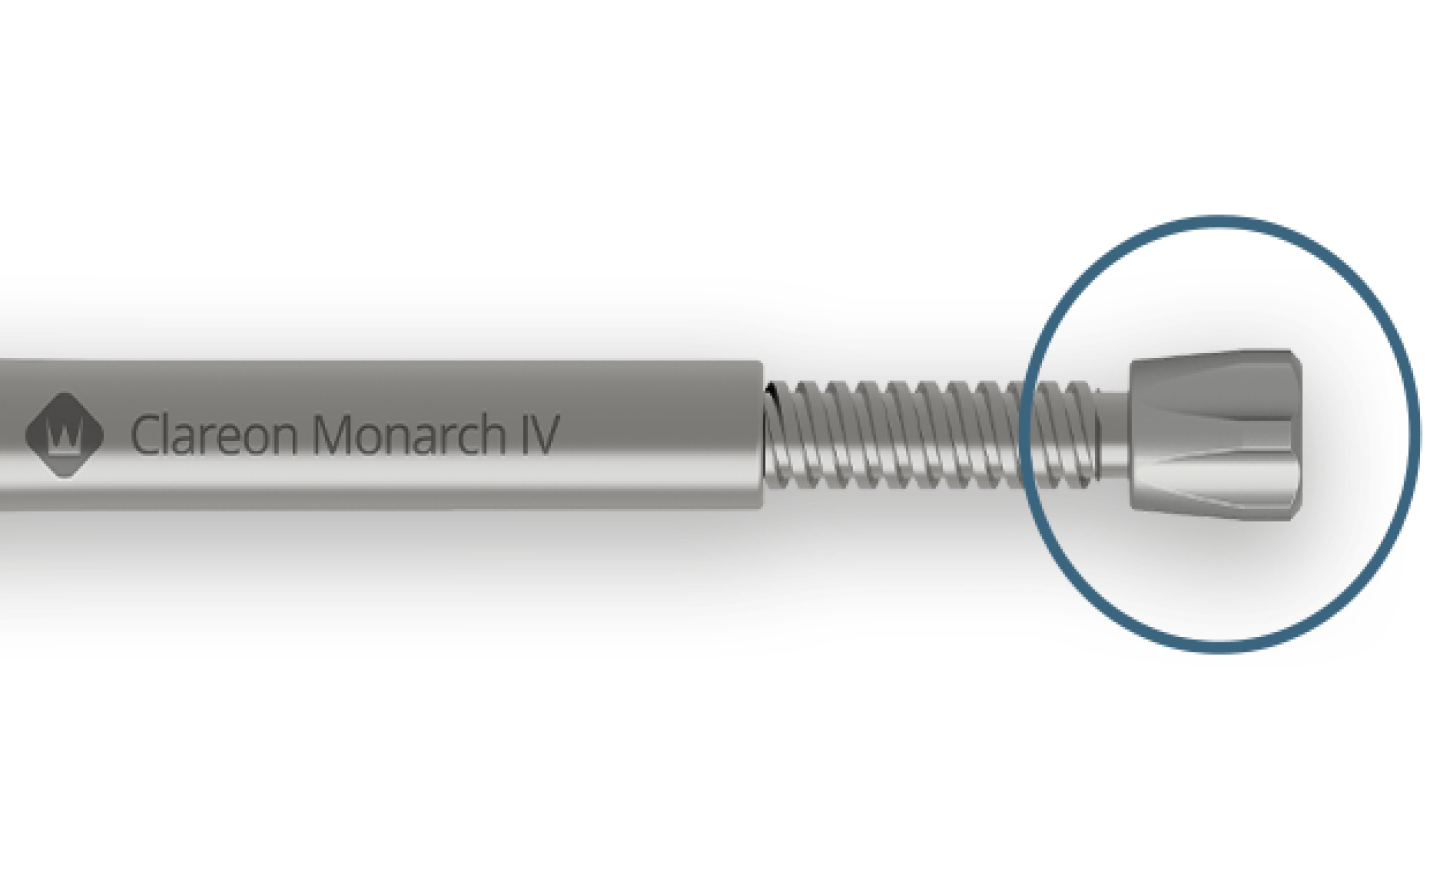 L’injecteur Clareon Monarch IV est placé à l'horizontale. Un cercle bleu est placé sur le bouton rotatif agrandi pour attirer l'attention.